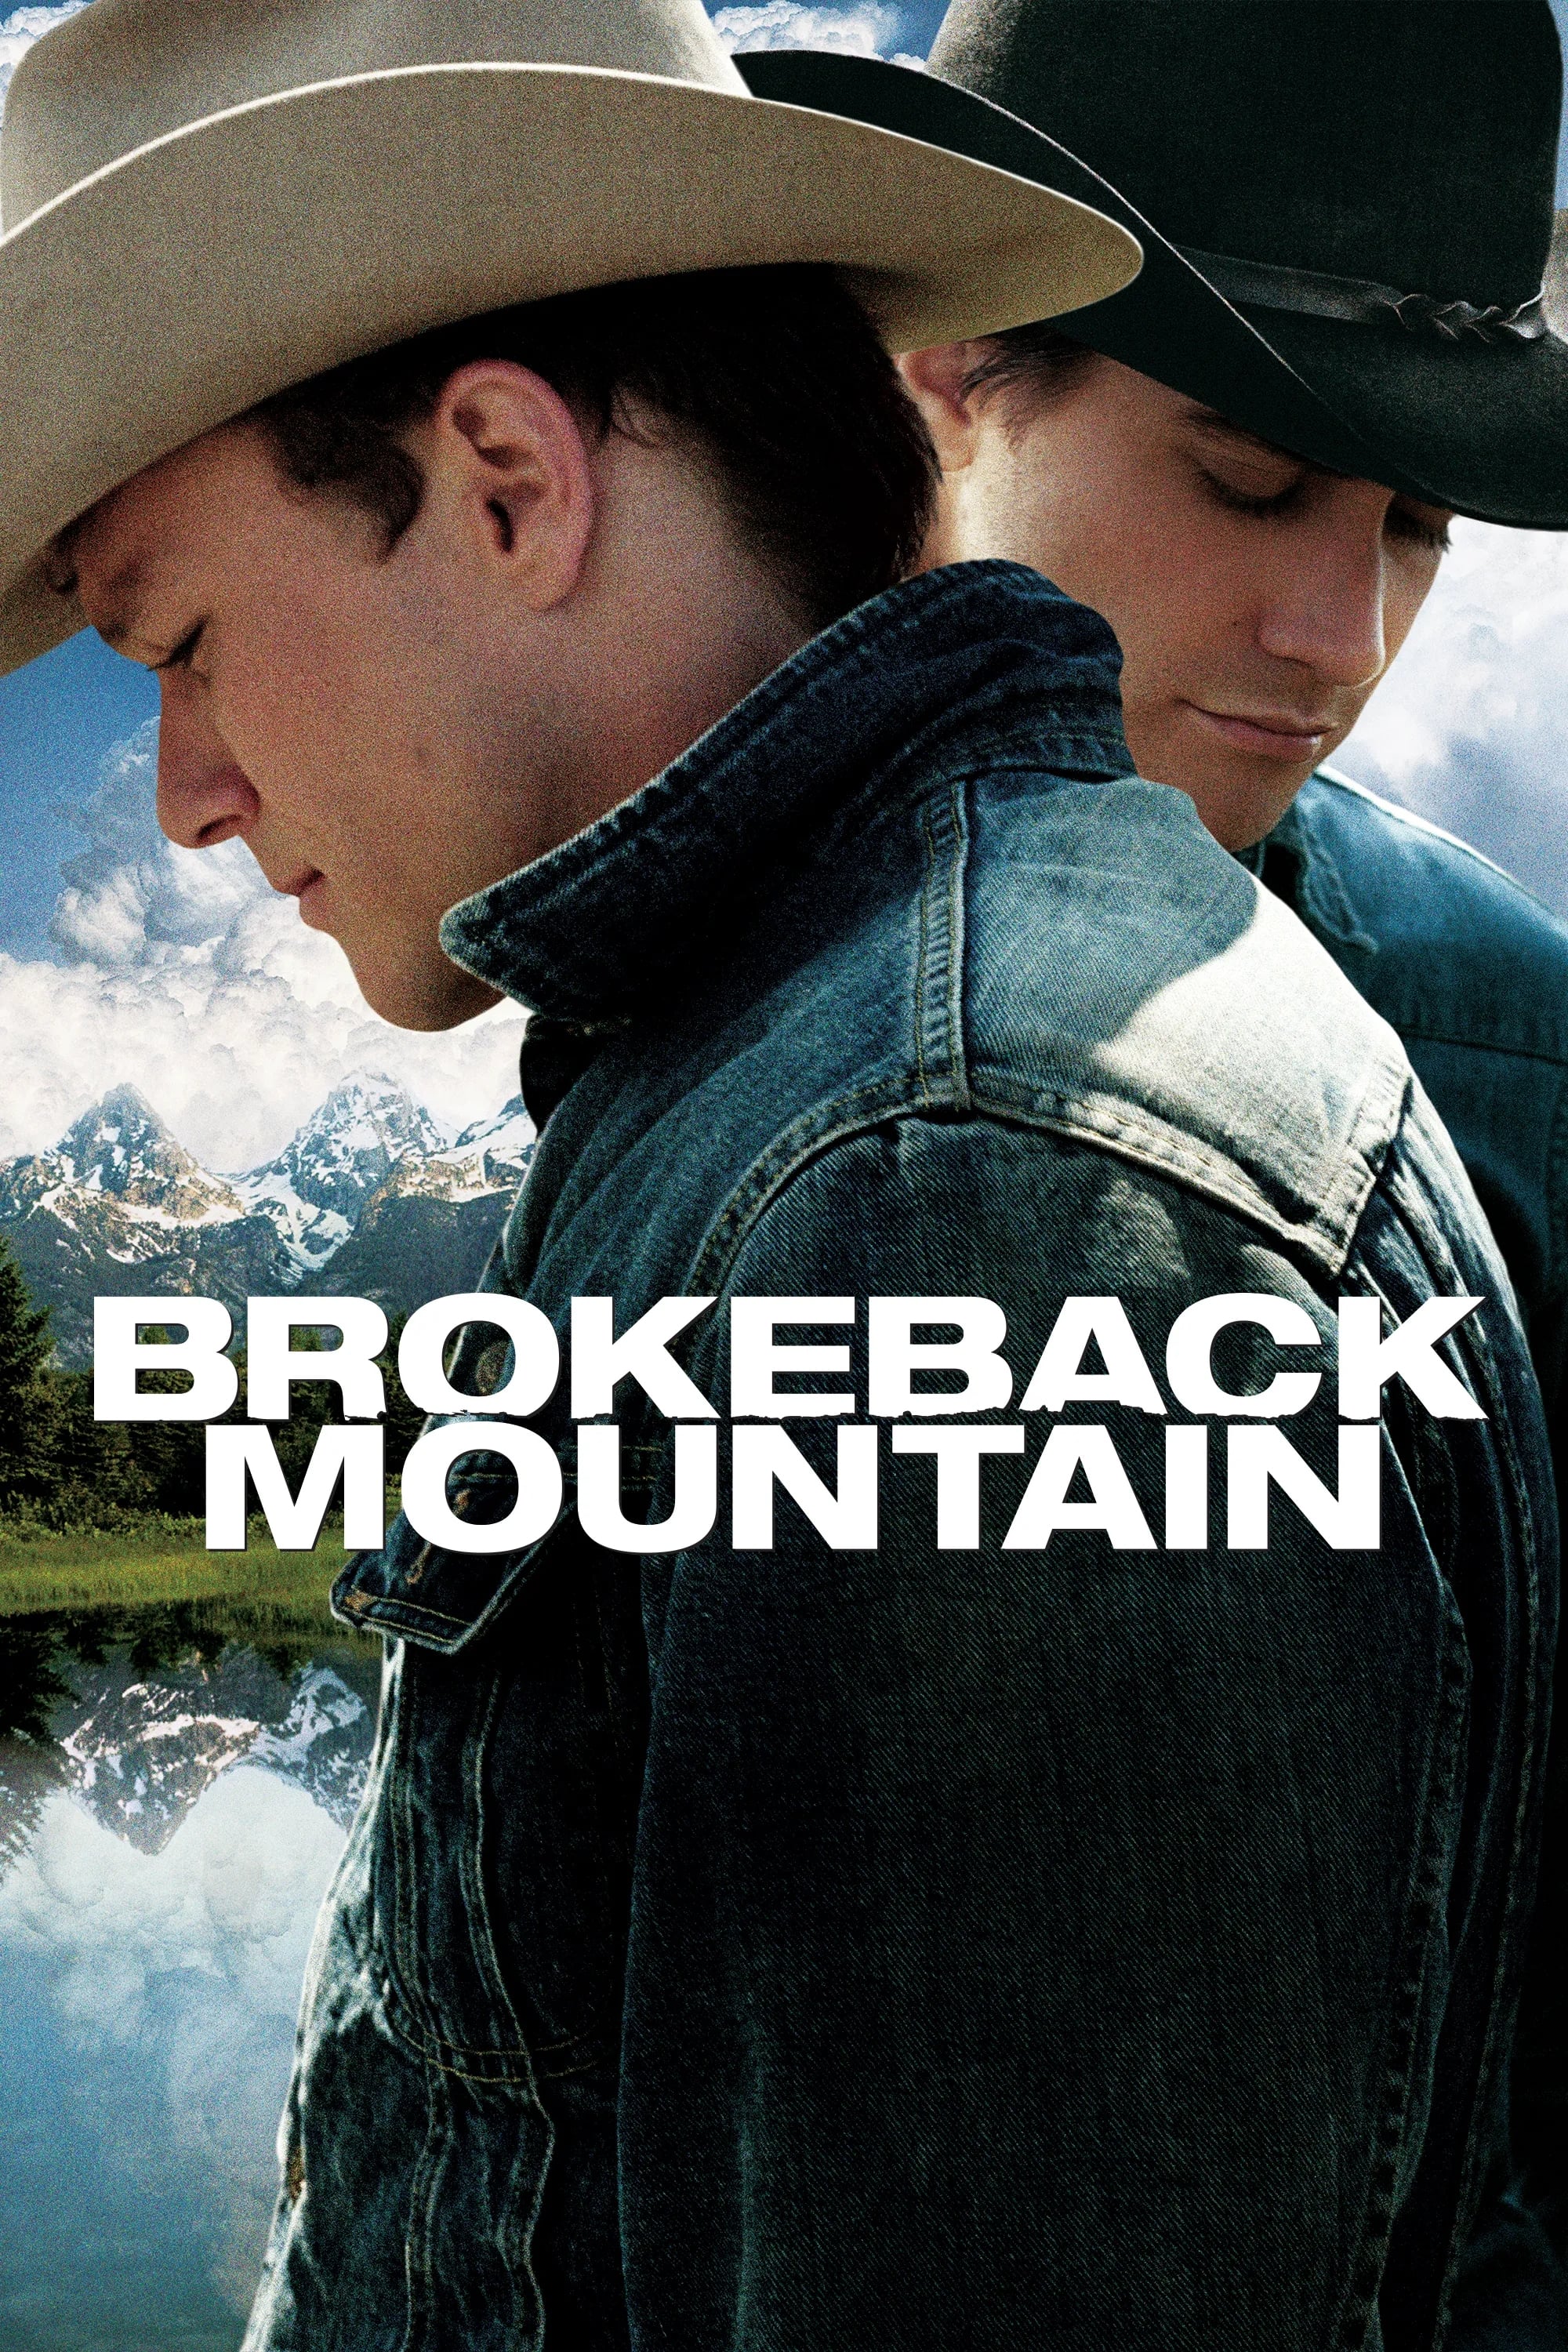 O Segredo de Brokeback Mountain (2005)